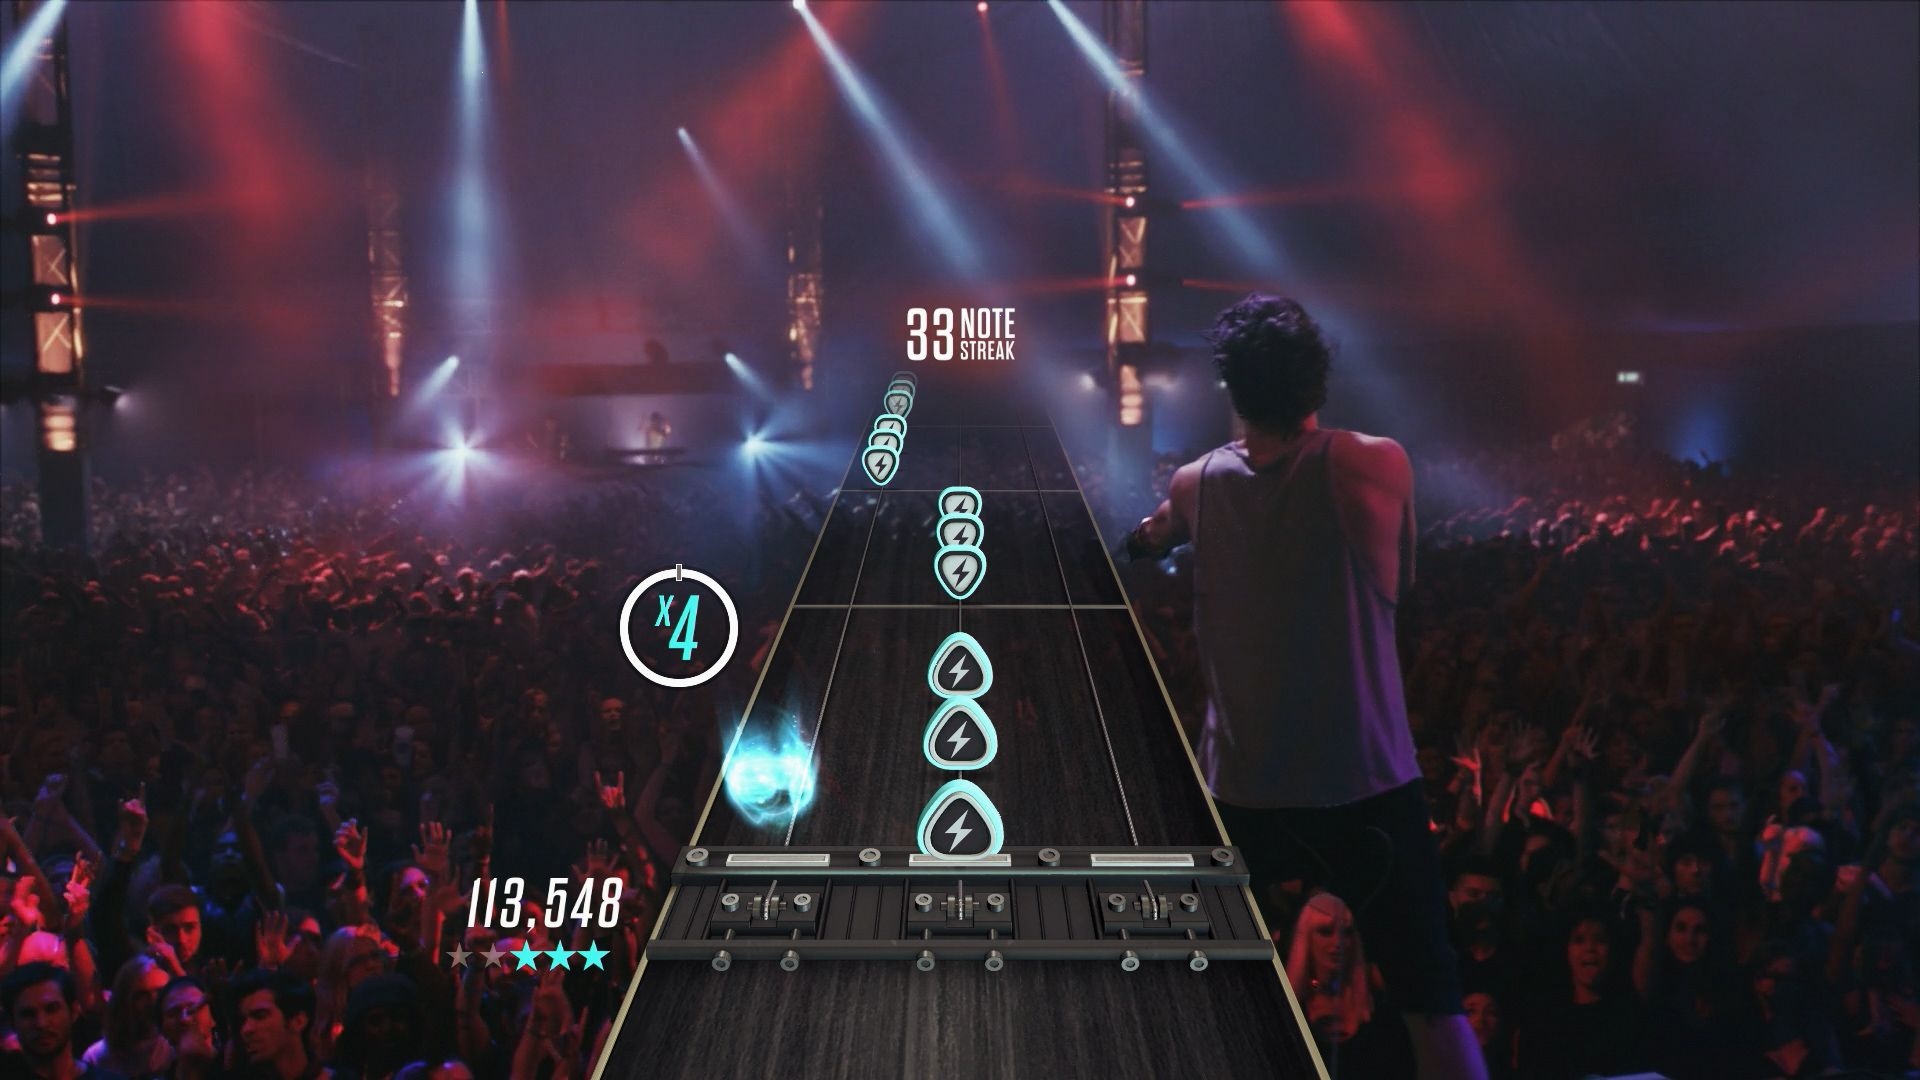 Guitar Hero Live Hern koncept sa zmenil, pritiahne novch hrov, no vie by aj nronej.